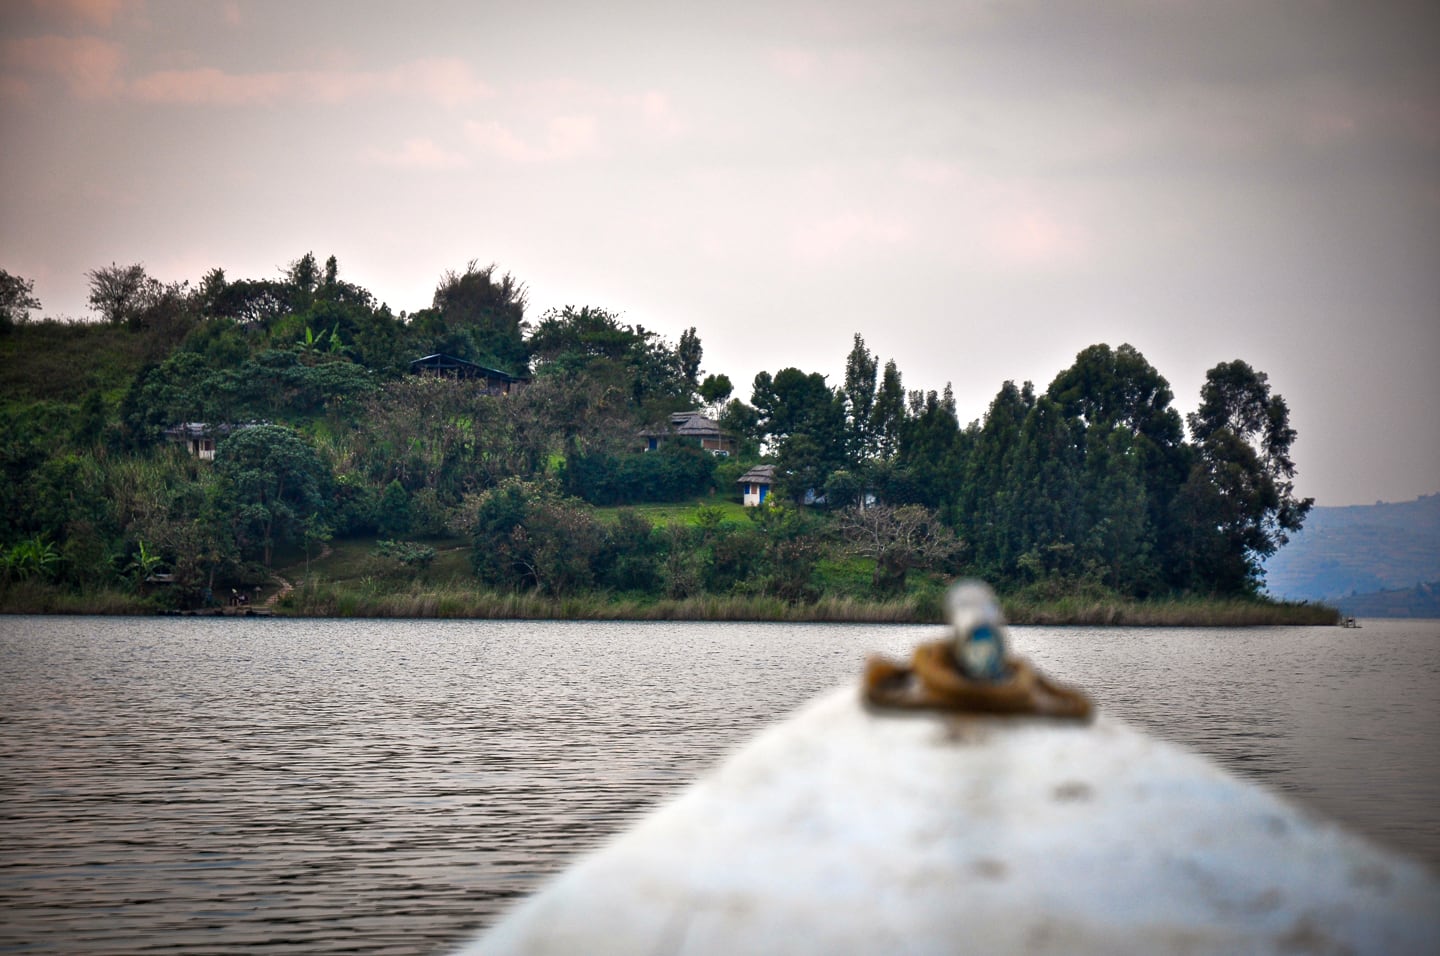 Byoona Amagara island retreat on Lake Bunyonyi Uganda